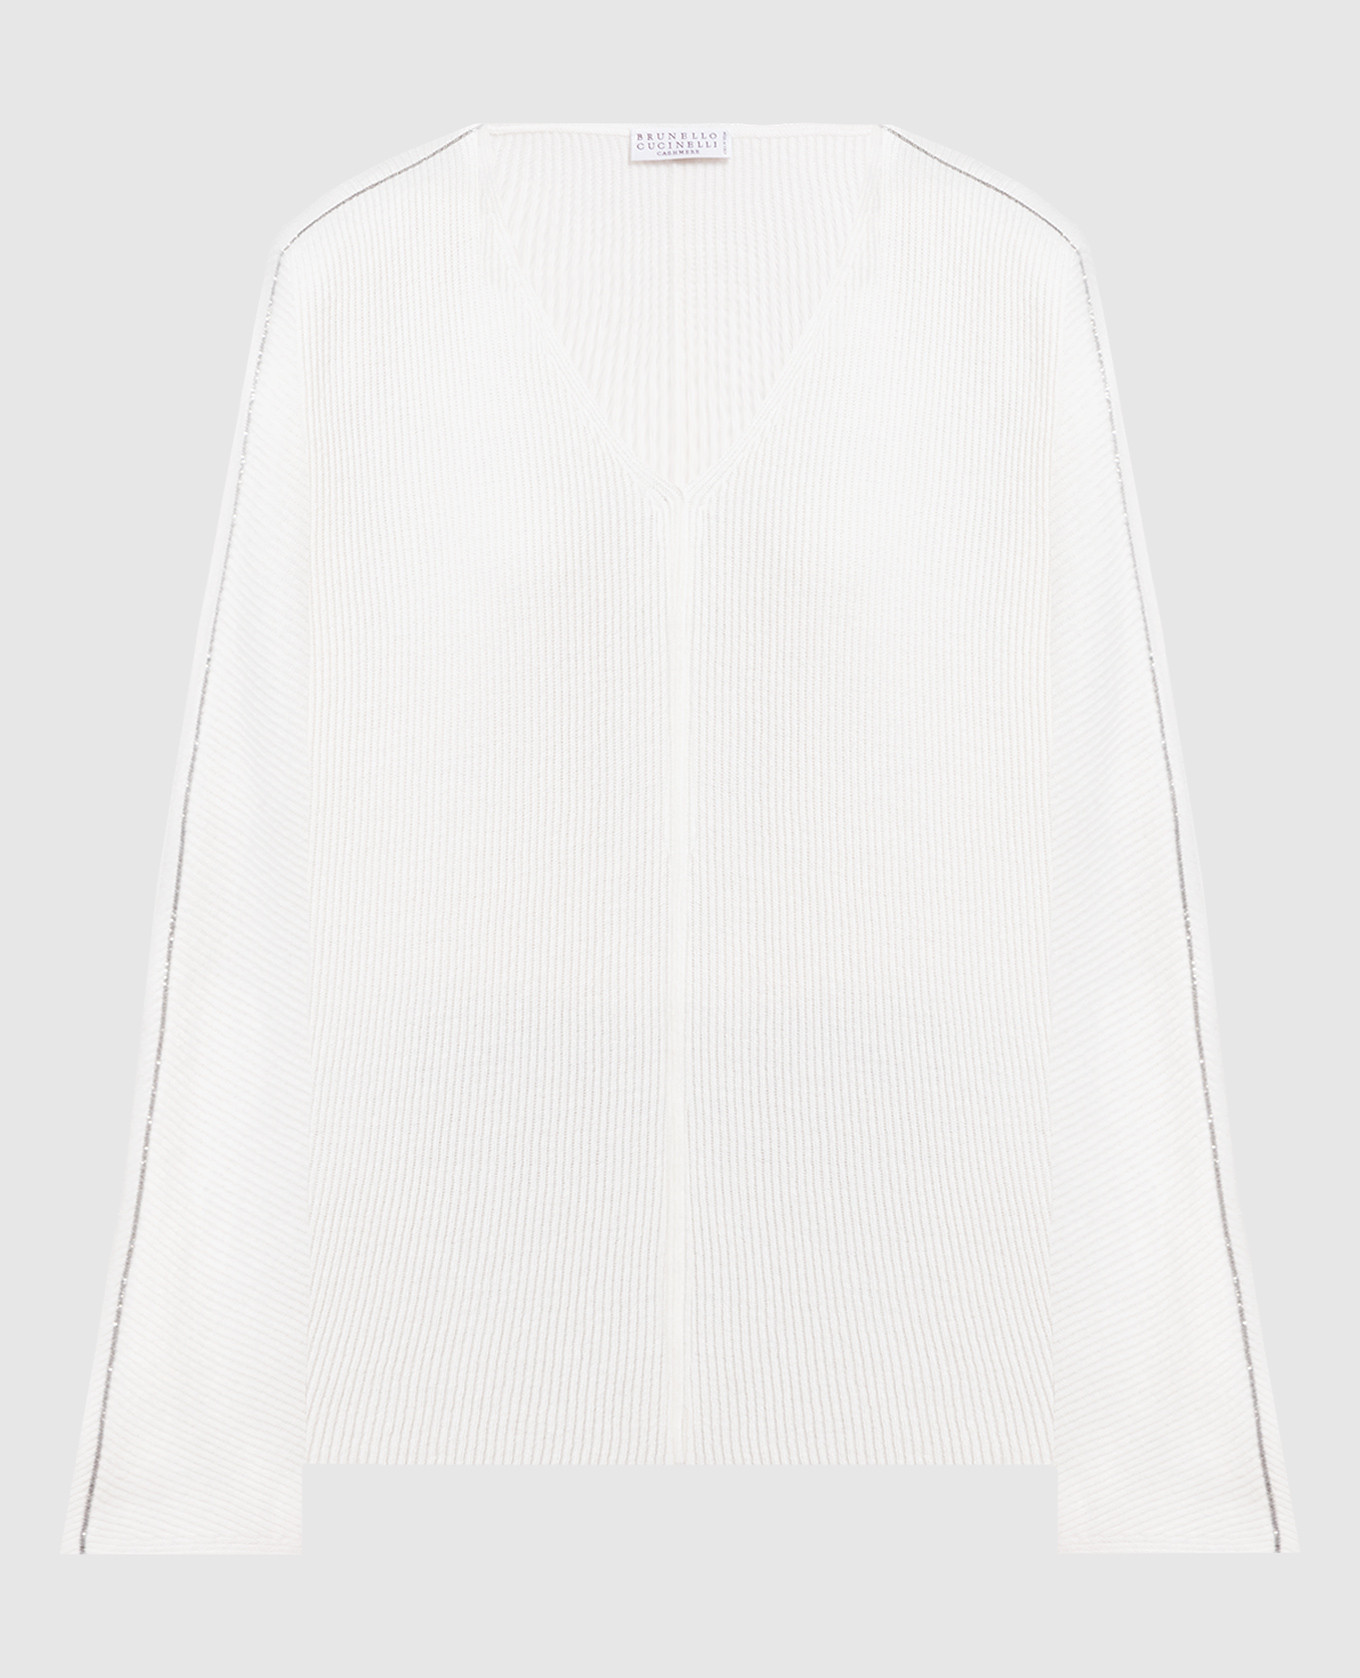 Белый пуловер из шерсти, кашемира и шелка с цепочкой мониль.